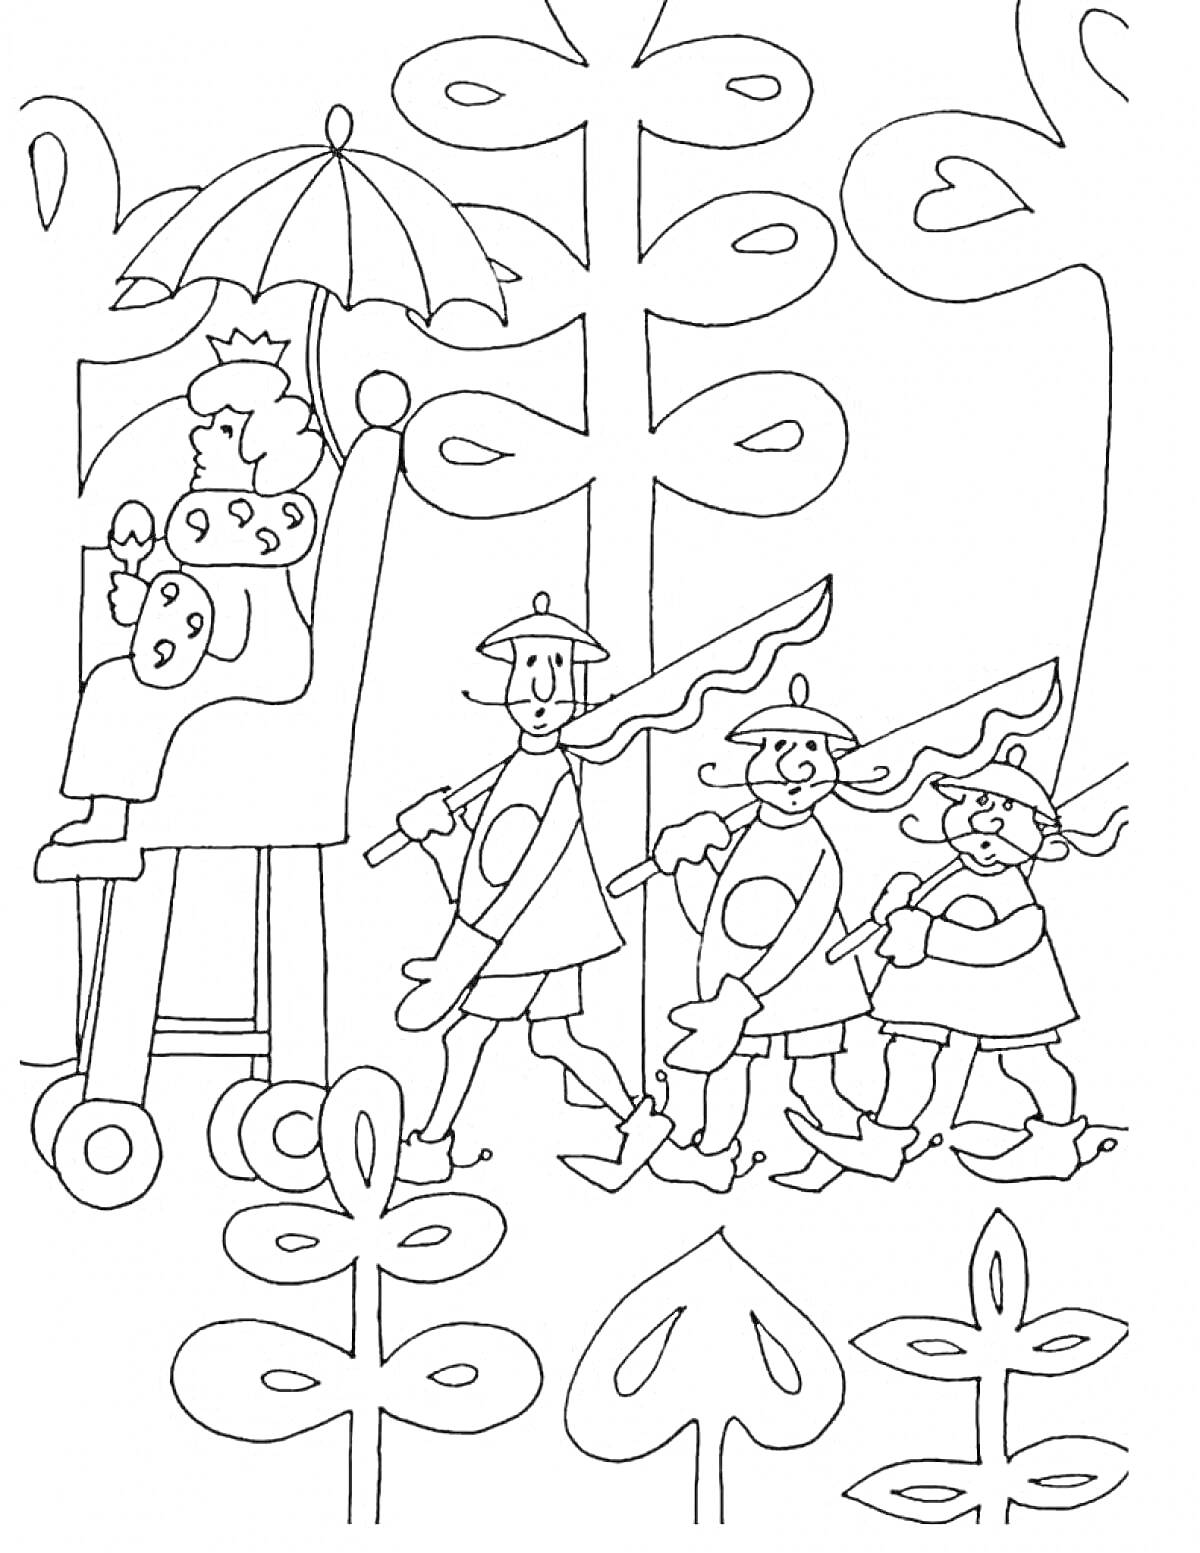 На раскраске изображено: Король, Стражники, Деревья, Листья, Бременские музыканты, Разбойники